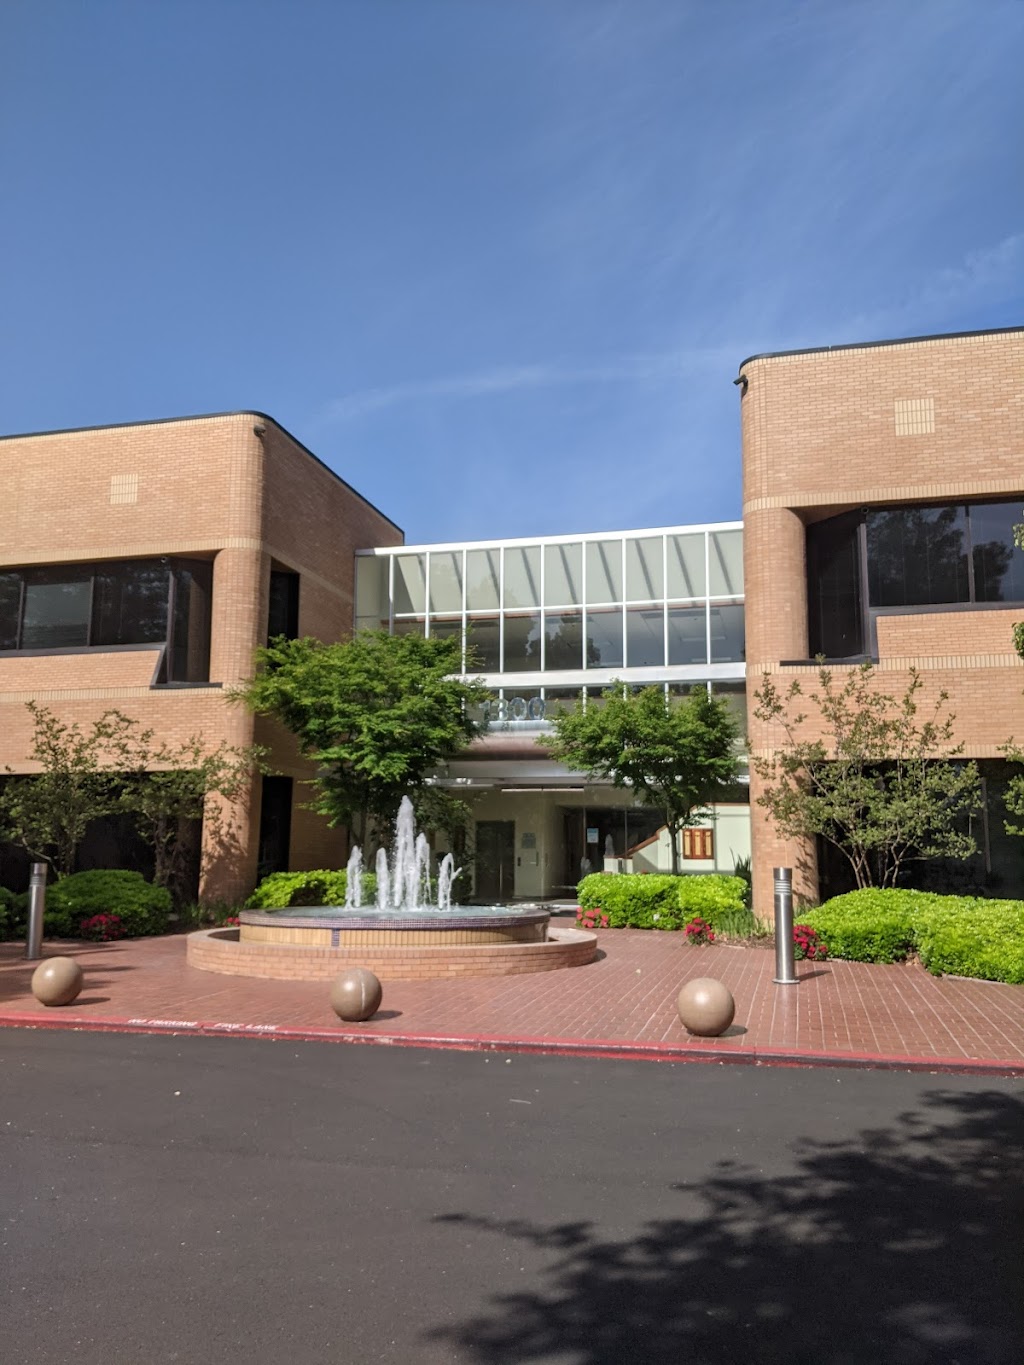 Ethan Conrad Properties Inc | 1300 National Dr # 100, Sacramento, CA 95834, USA | Phone: (916) 779-1000